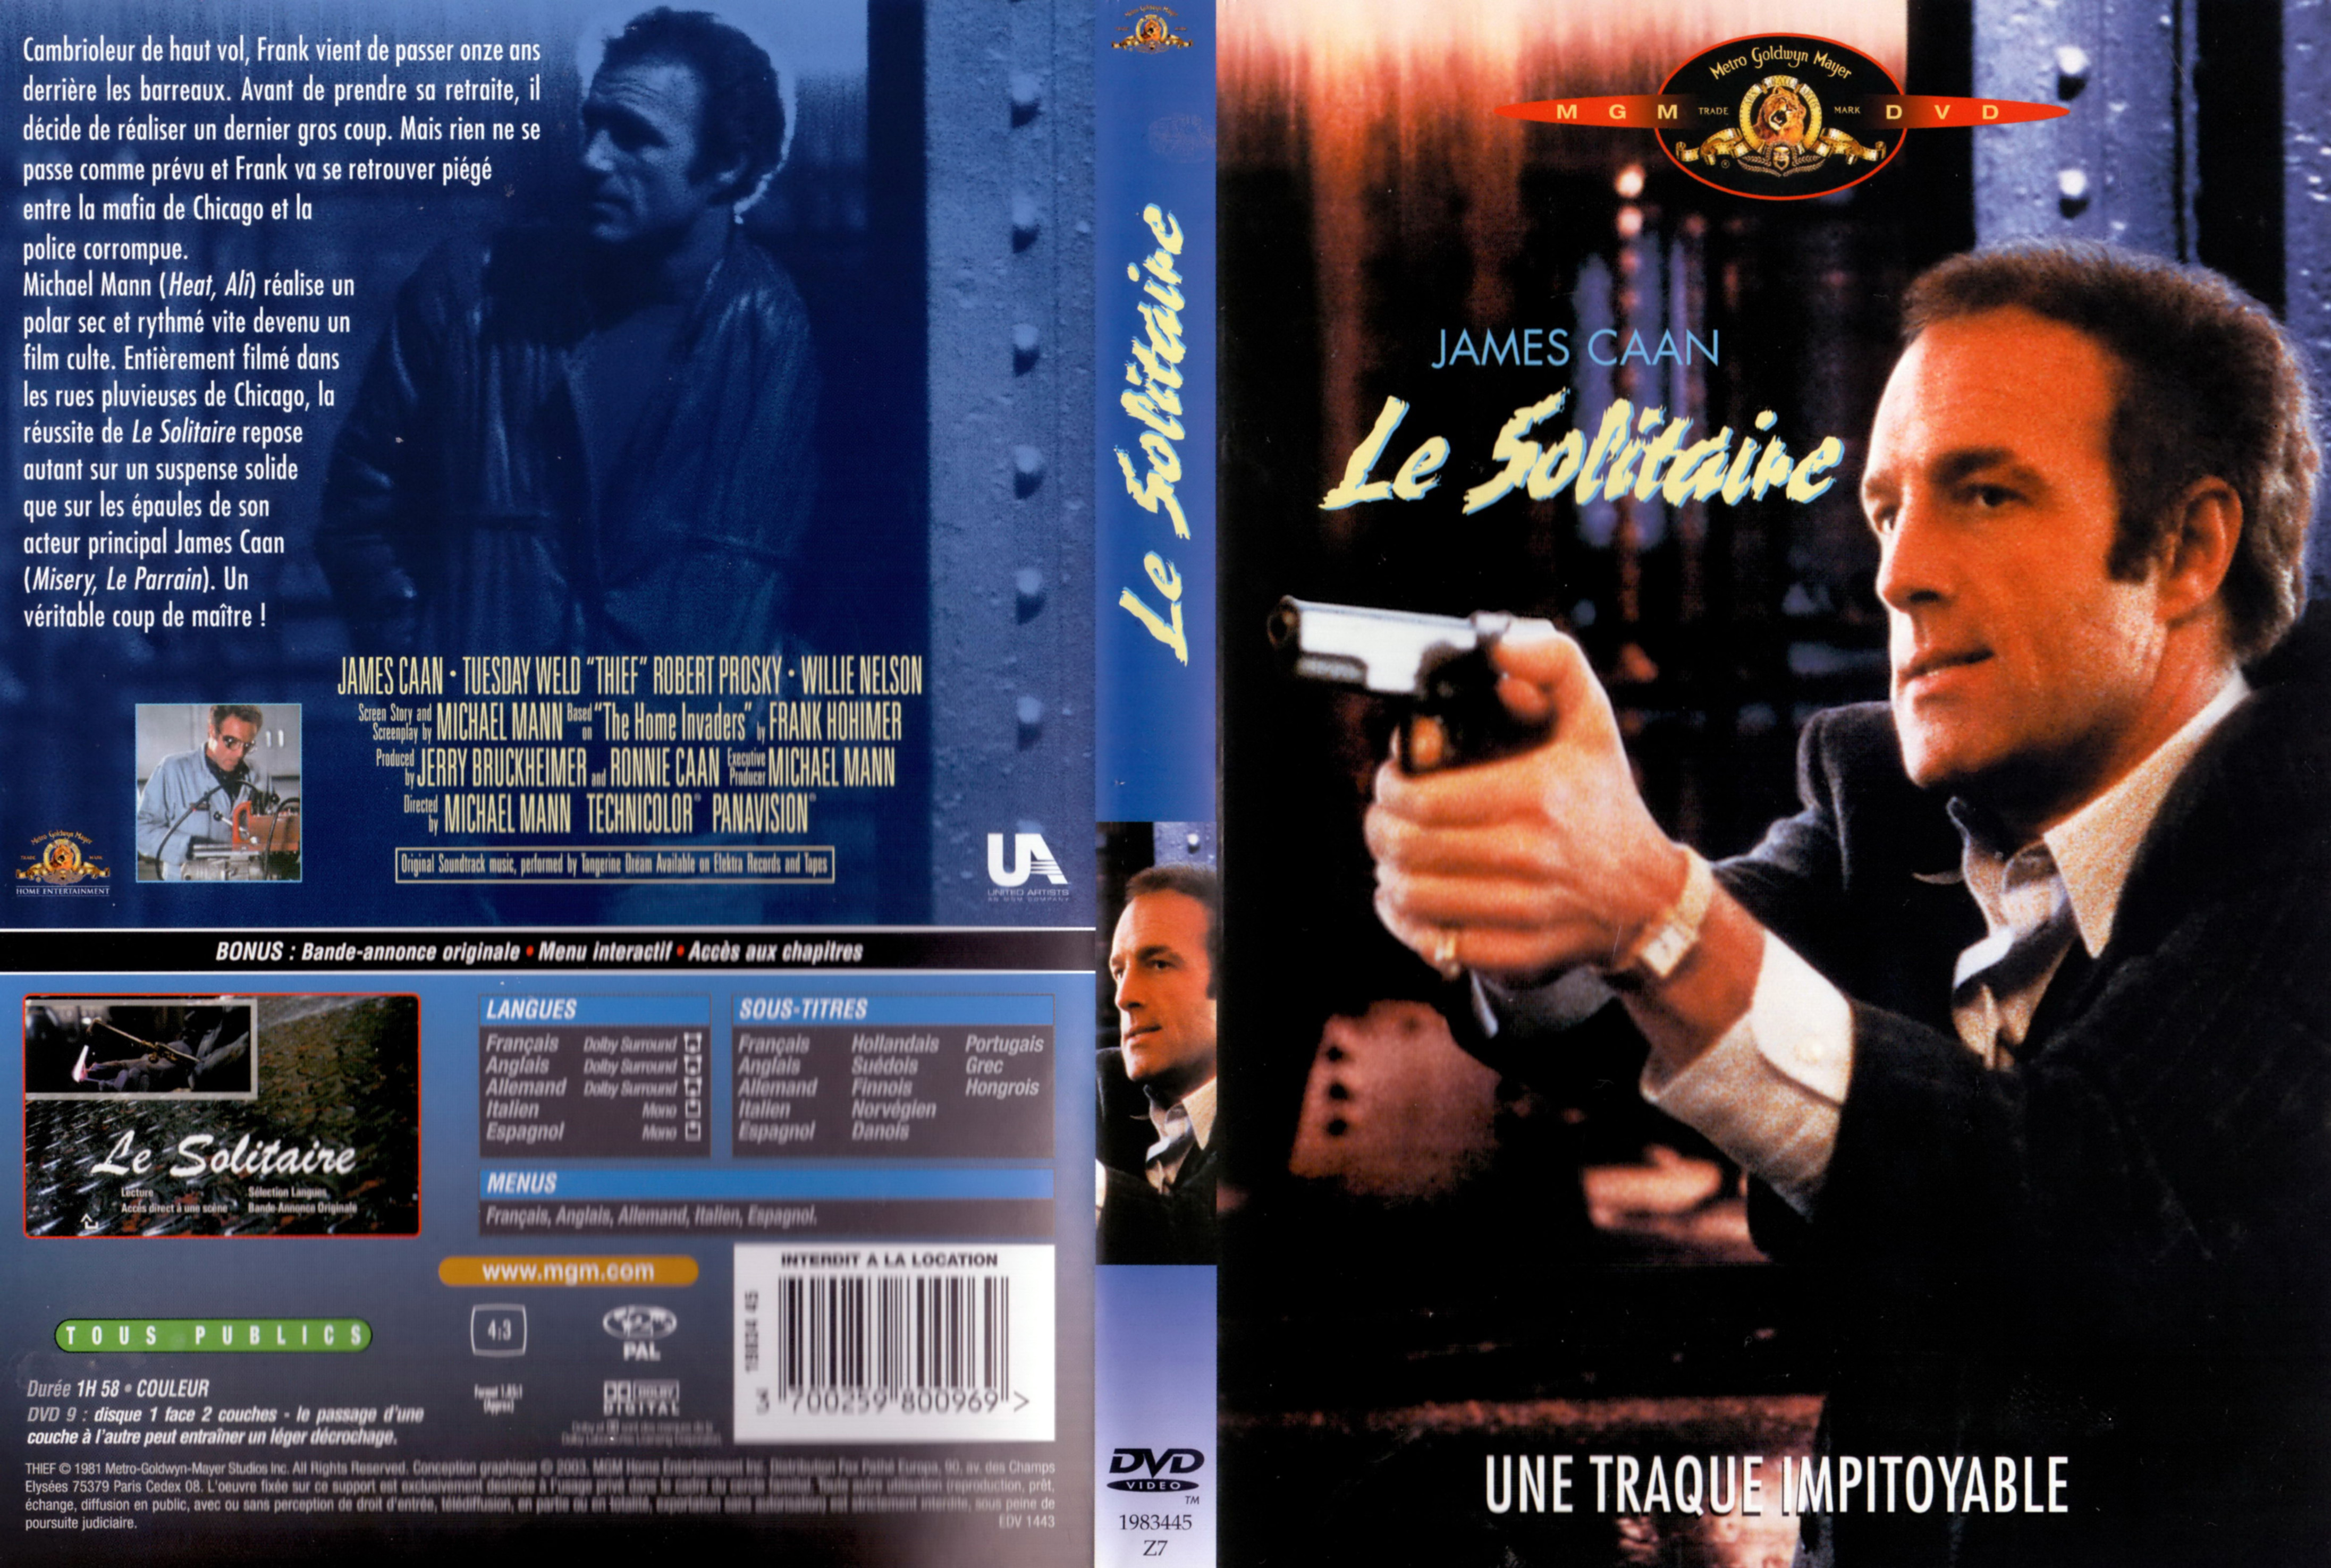 Jaquette DVD Le solitaire (1981)